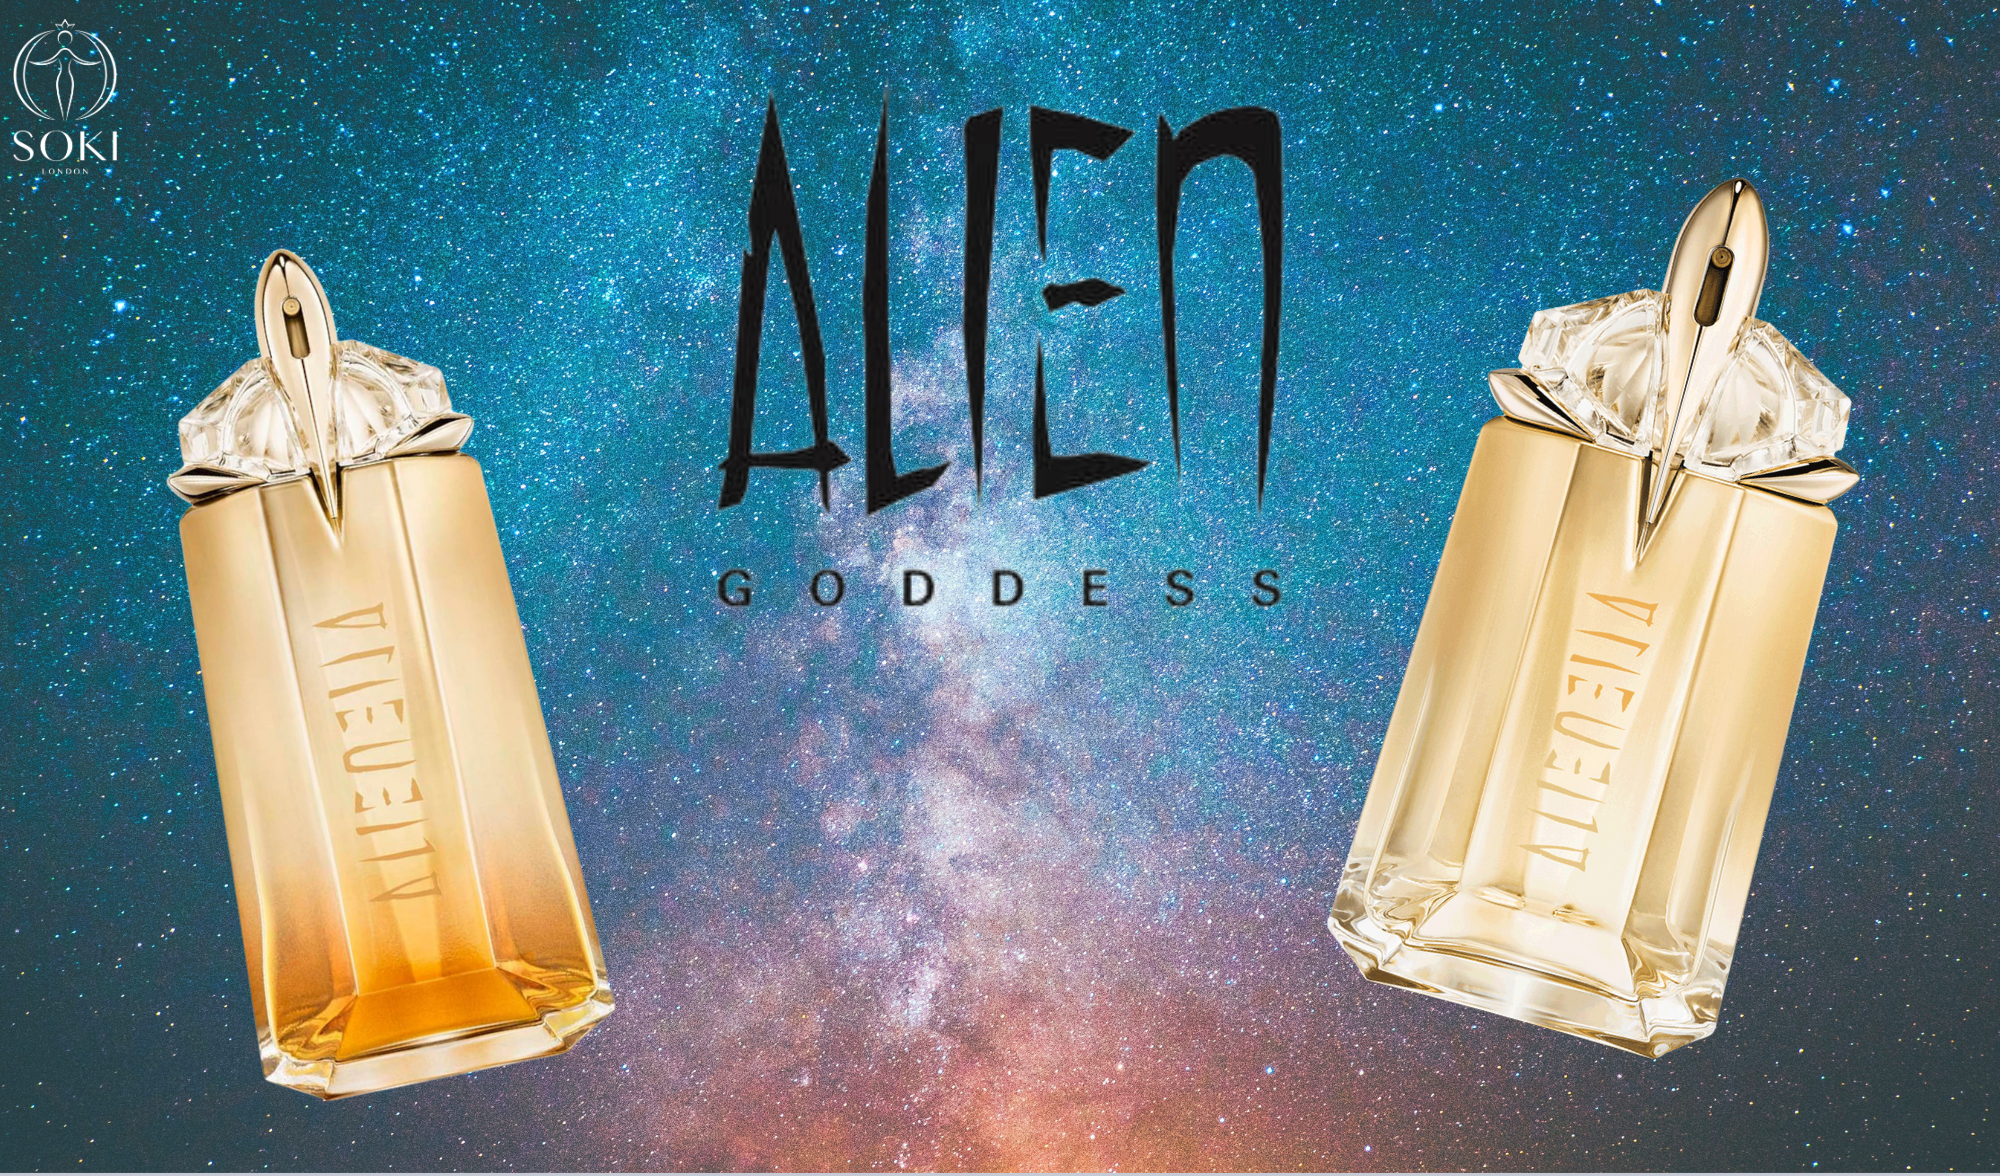 Thierry Mugler Alien Goddess vs Alien Goddess Intense